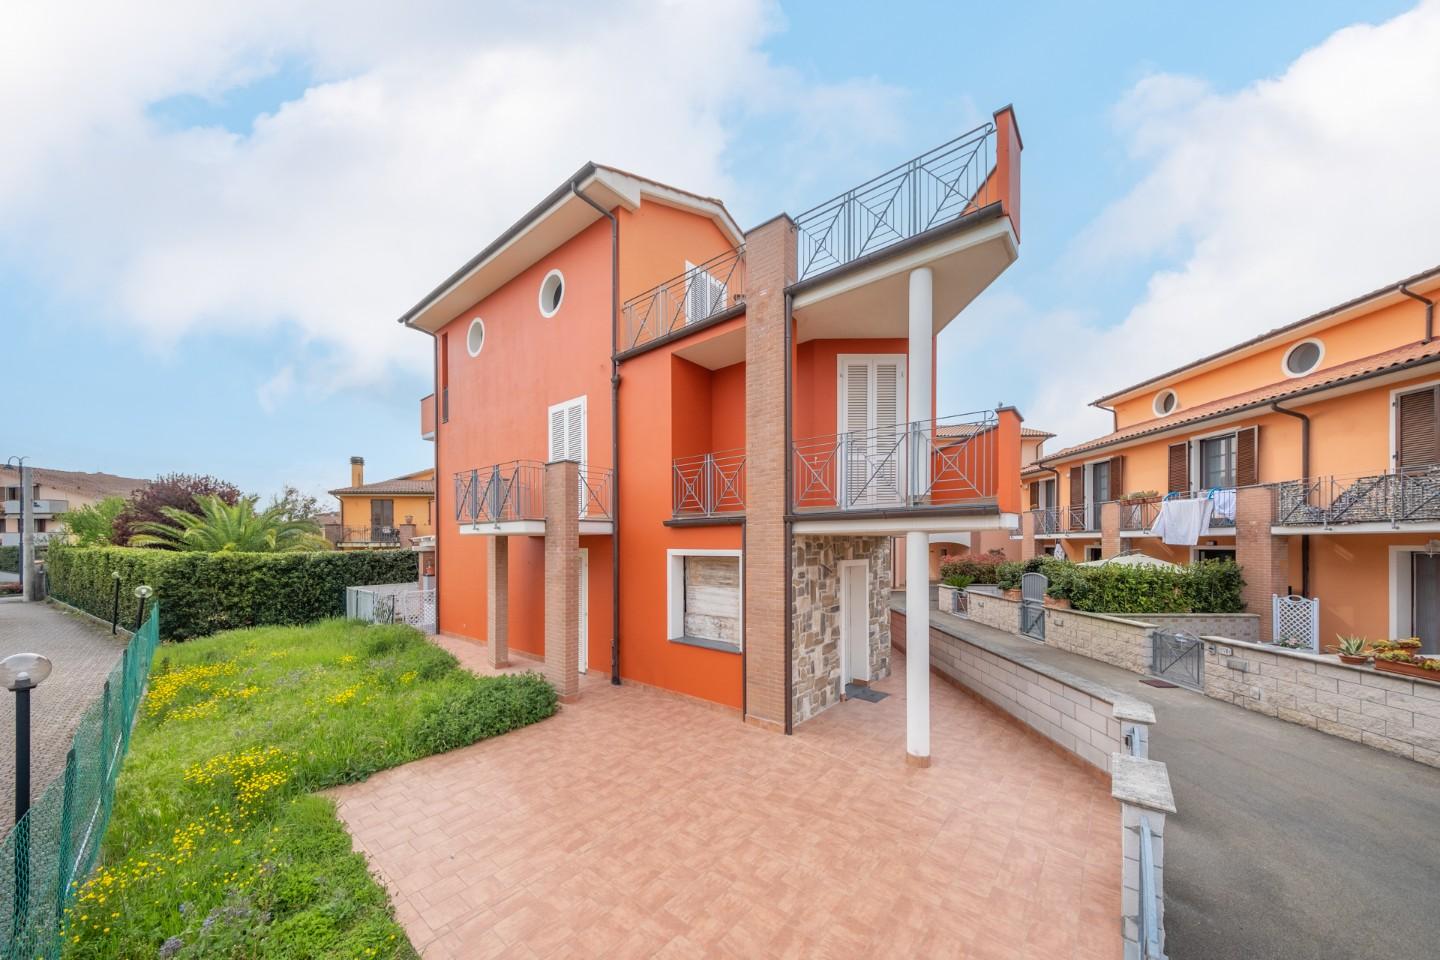 Villa Bifamiliare in vendita a Bientina, 5 locali, prezzo € 290.000 | PortaleAgenzieImmobiliari.it